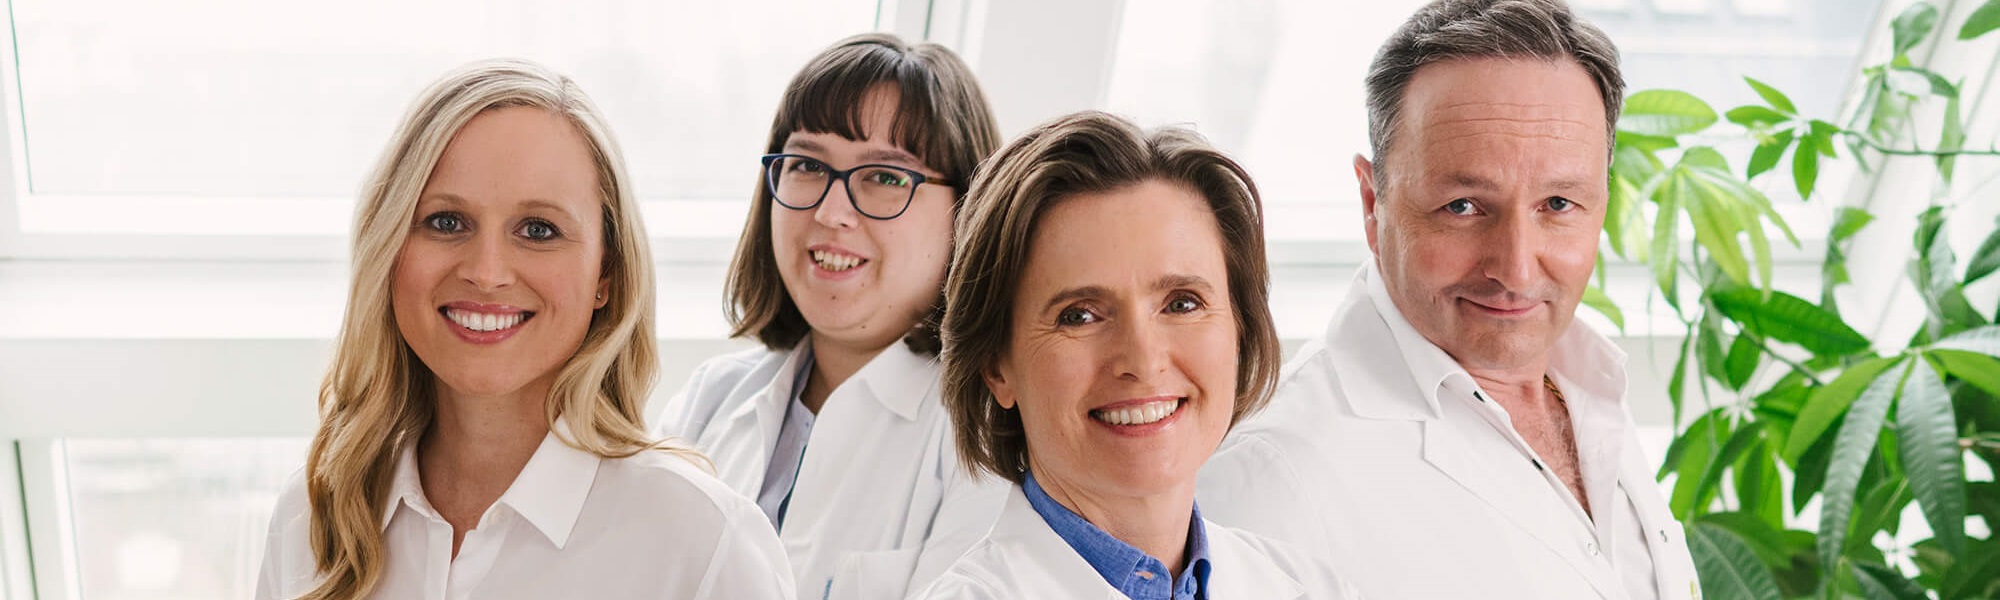 Gruppenfoto mit 3 Frauen und einem Mann rechts die alle weiße Ärztekittel tragen und in die Kamera lächeln.